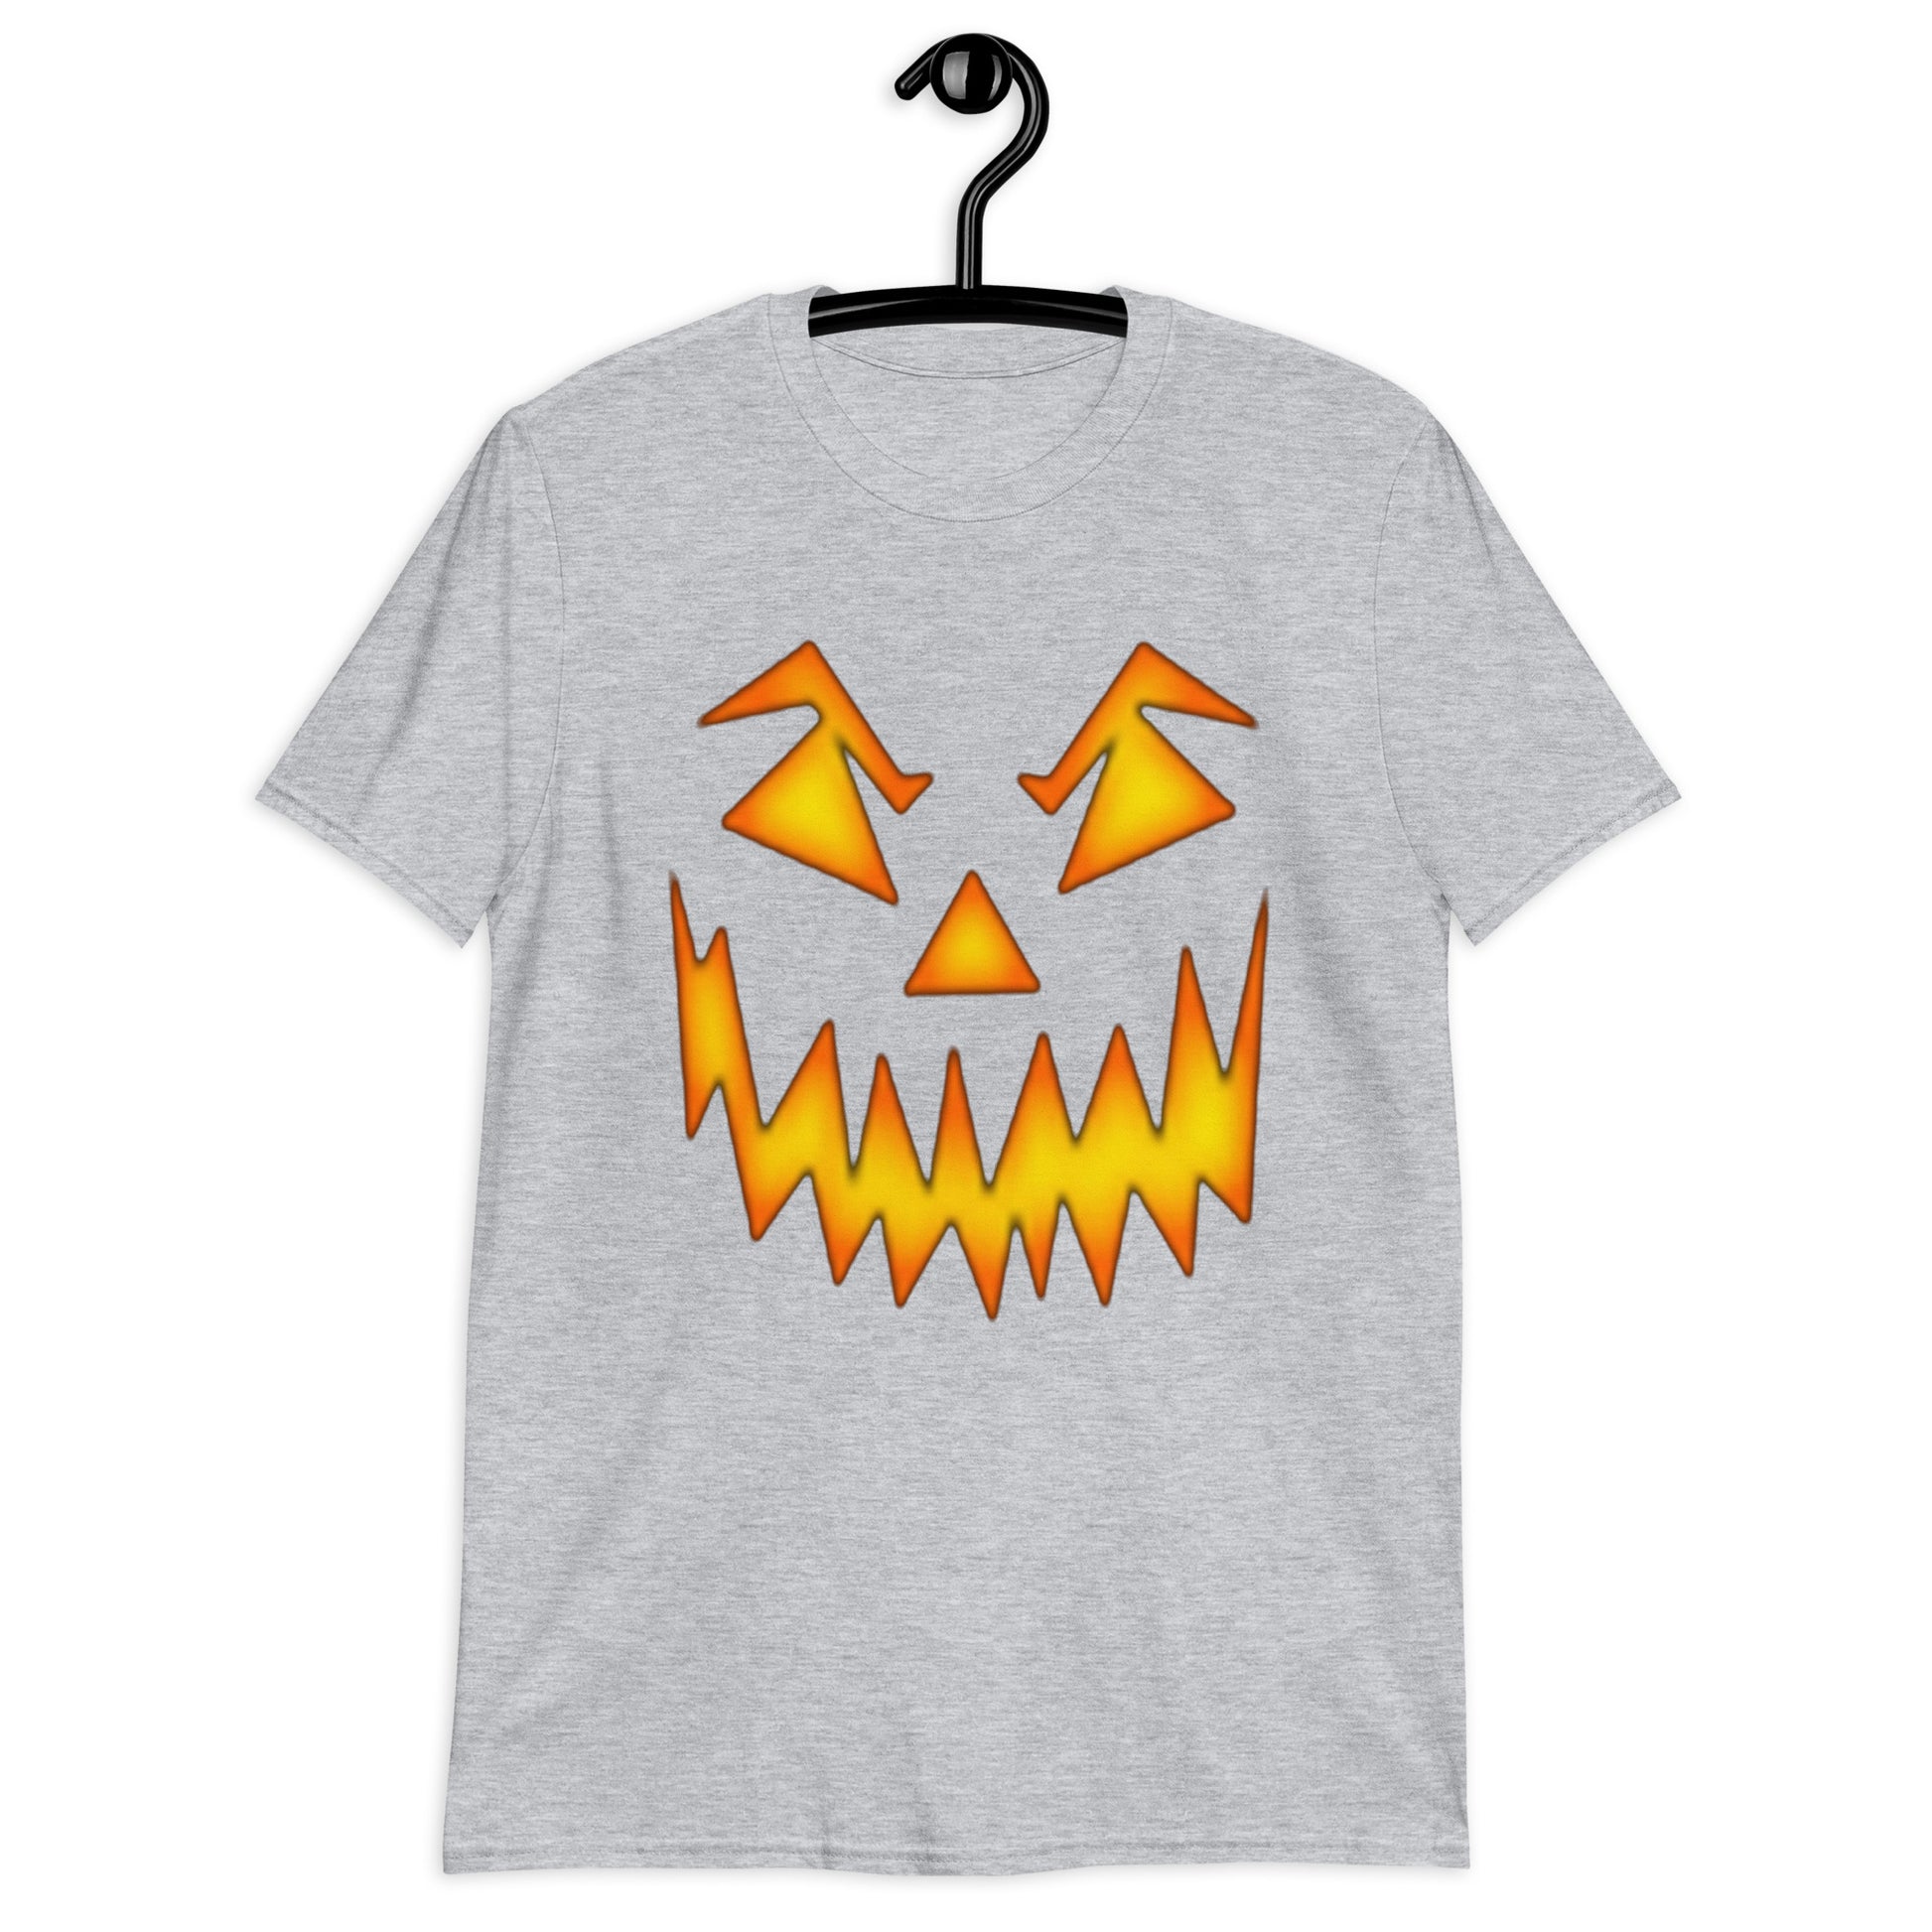 Fiery Face T-Shirt / Scary Face T-Shirt / Halloween Day T-Shirt